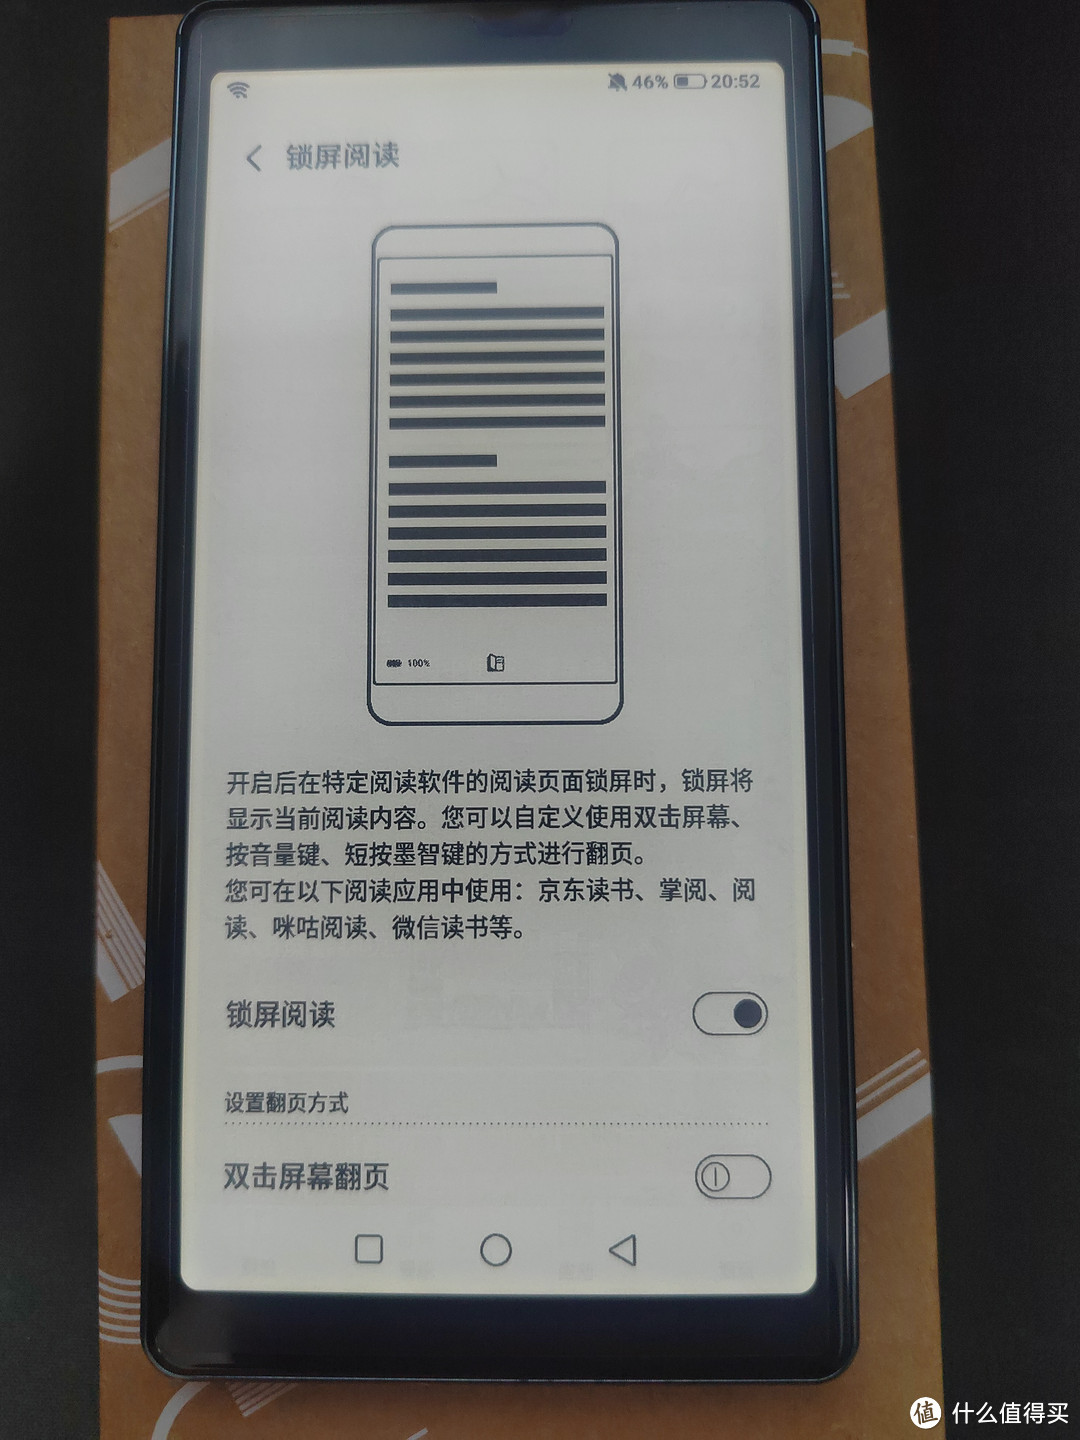 海信特色的锁屏阅读功能，在屏幕锁定时可以阅读京东读书之类的书籍。